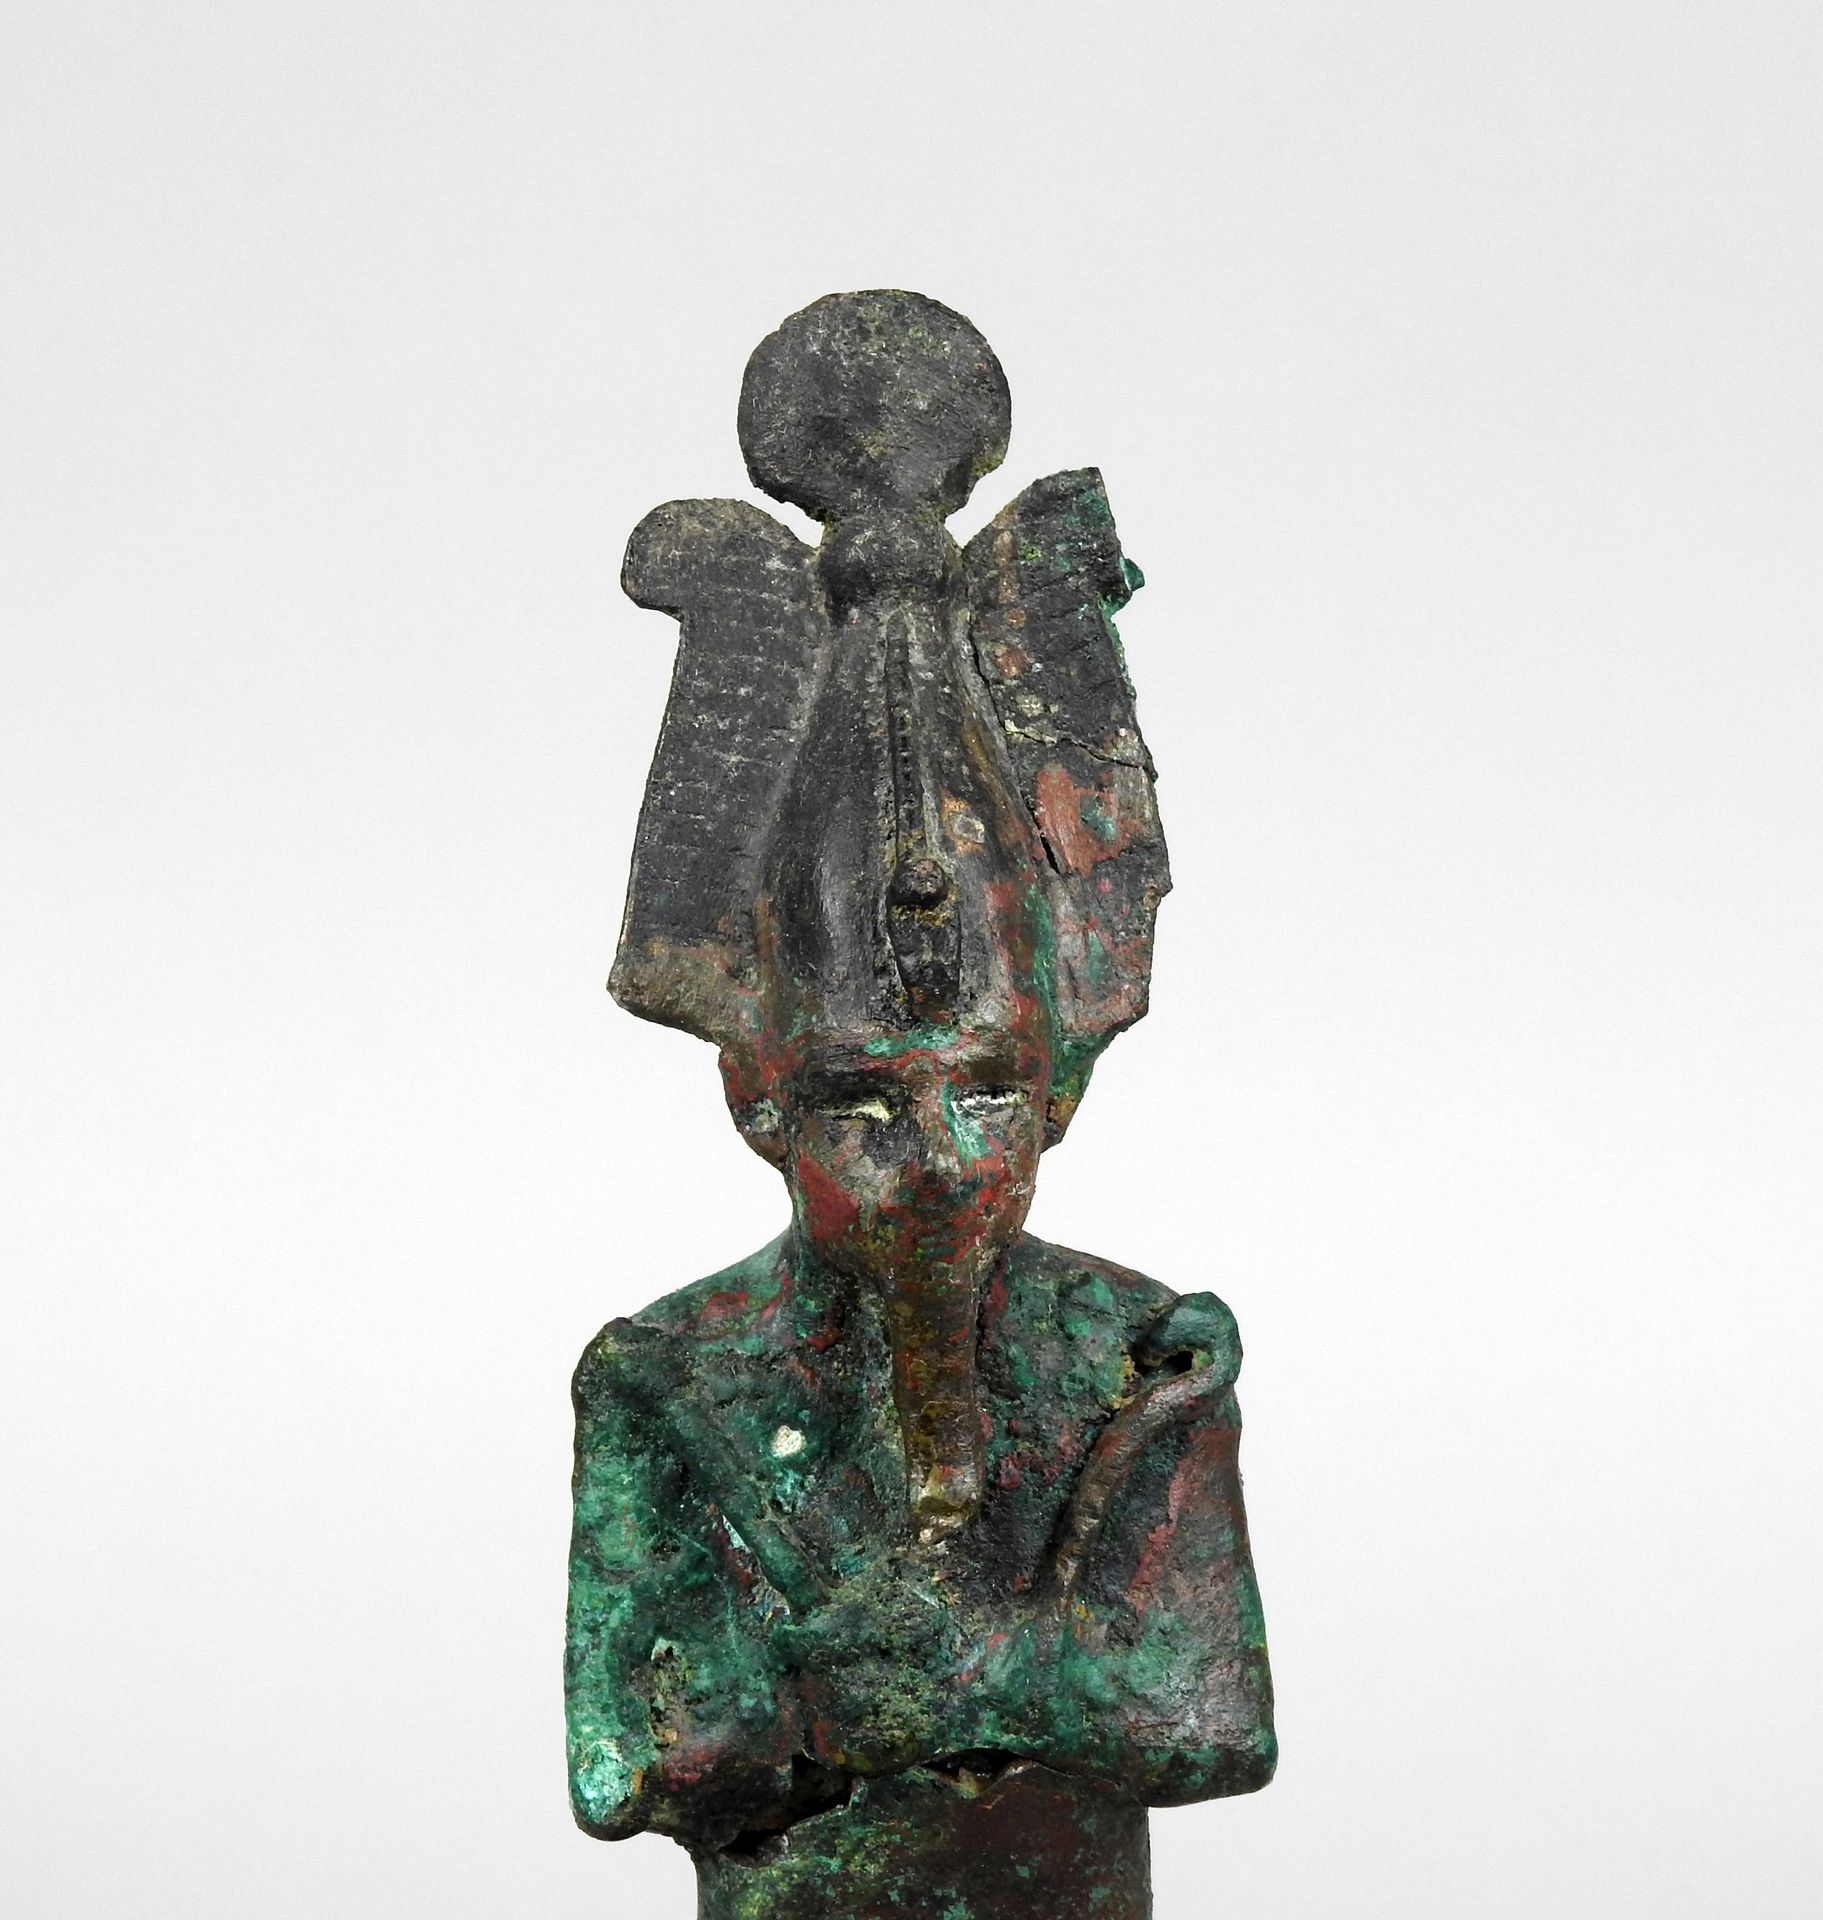 Null 奥西里斯携带农具和阿特夫王冠

出处：Khépri画廊，巴黎

青铜器在腿部的水平上有15厘米的恢复能力

古代埃及晚期塞特时期